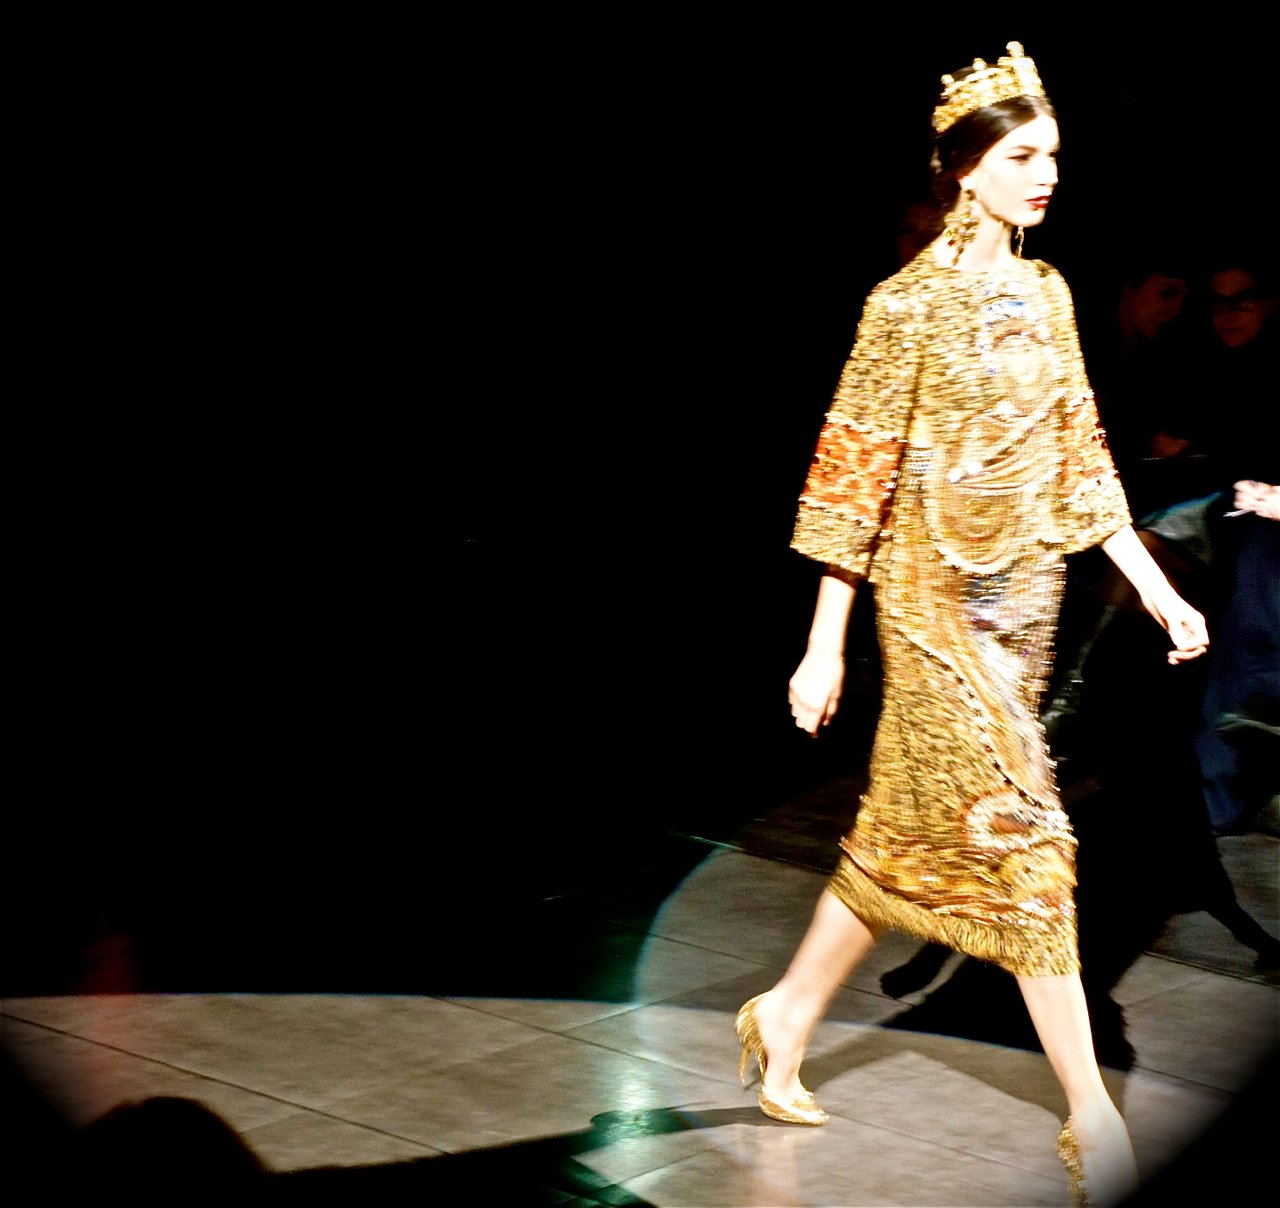 Semana de moda de Milão: Dolce & Gabbana Inverno 2013